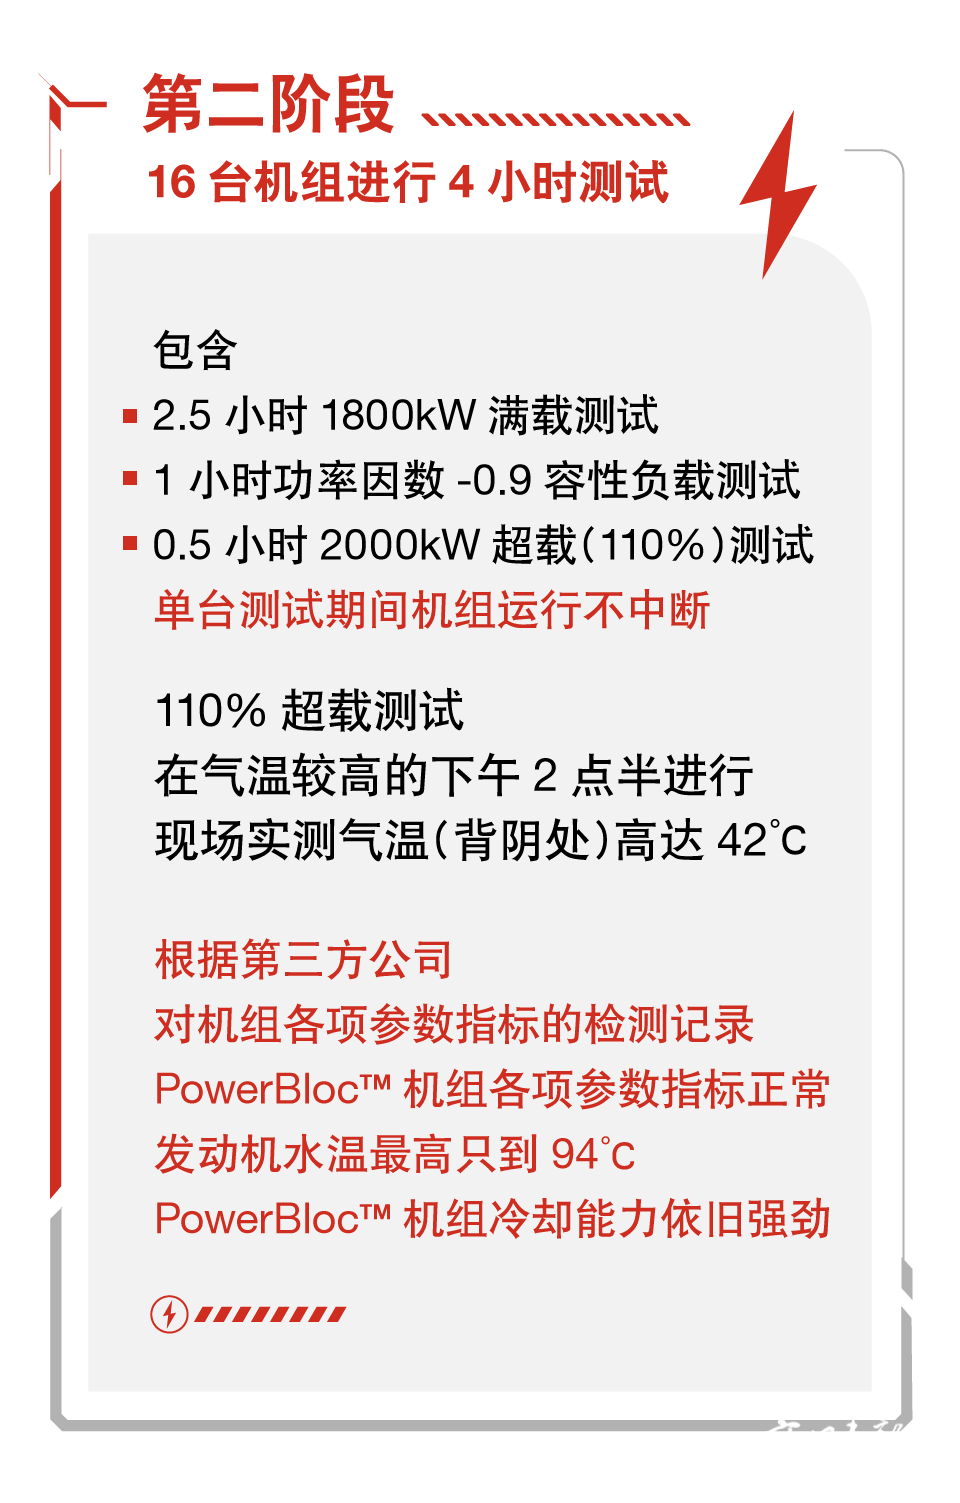 康明斯电力机组扛得住北京40°C高温